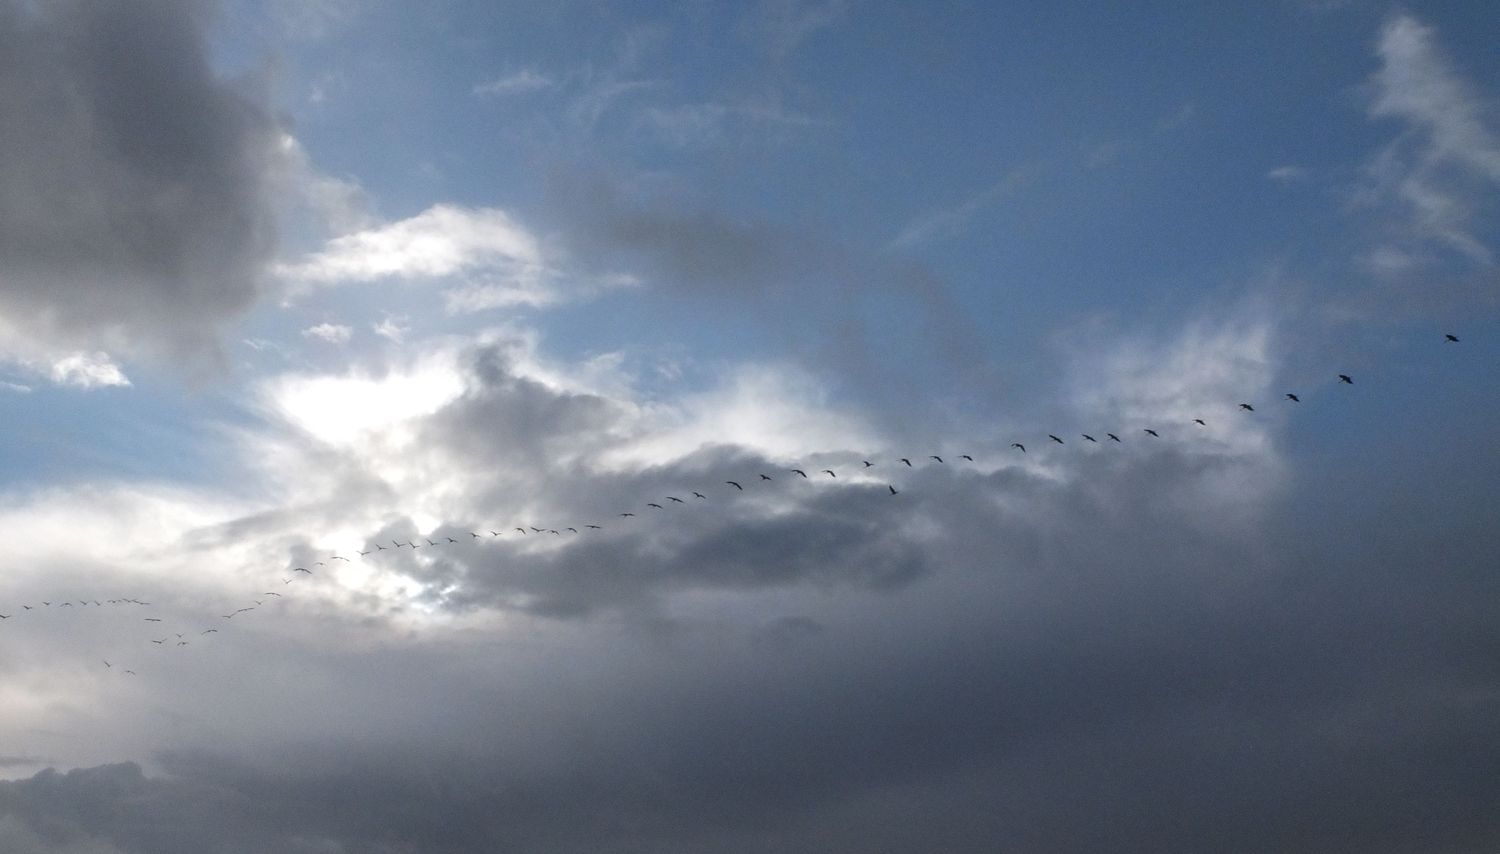 Vol de grues entre les nuages ensoleillés